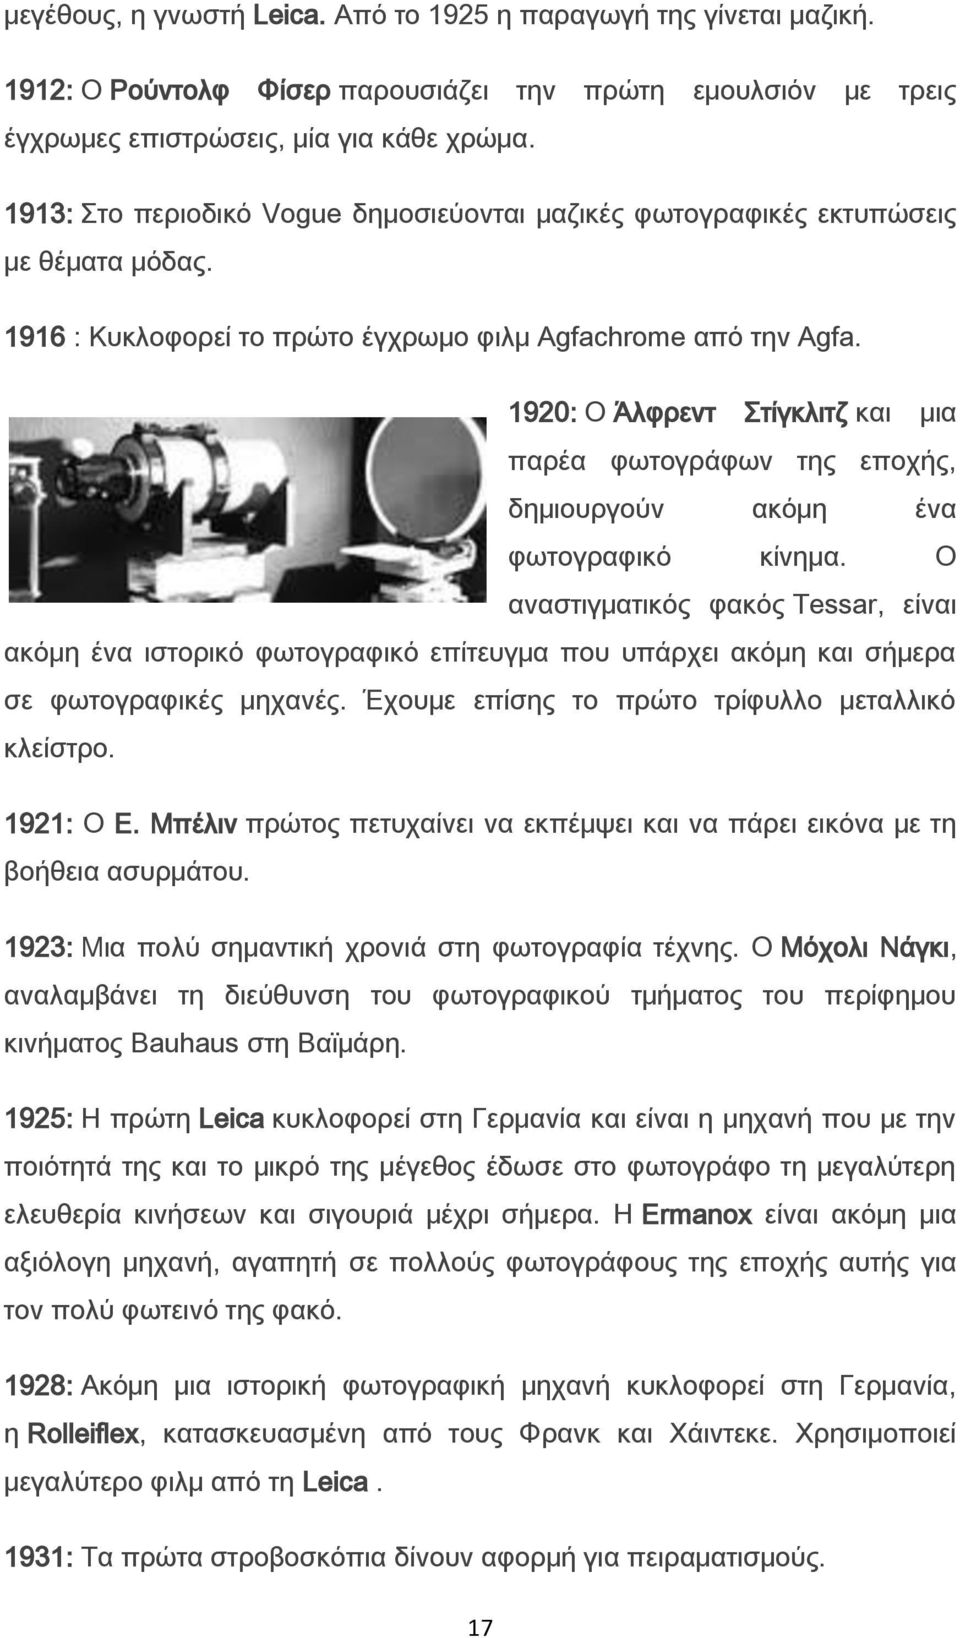 1920: Ο Άλφρεντ τίγκλιτζ και μια παρέα φωτογράφων της εποχής, δημιουργούν ακόμη ένα φωτογραφικό κίνημα.